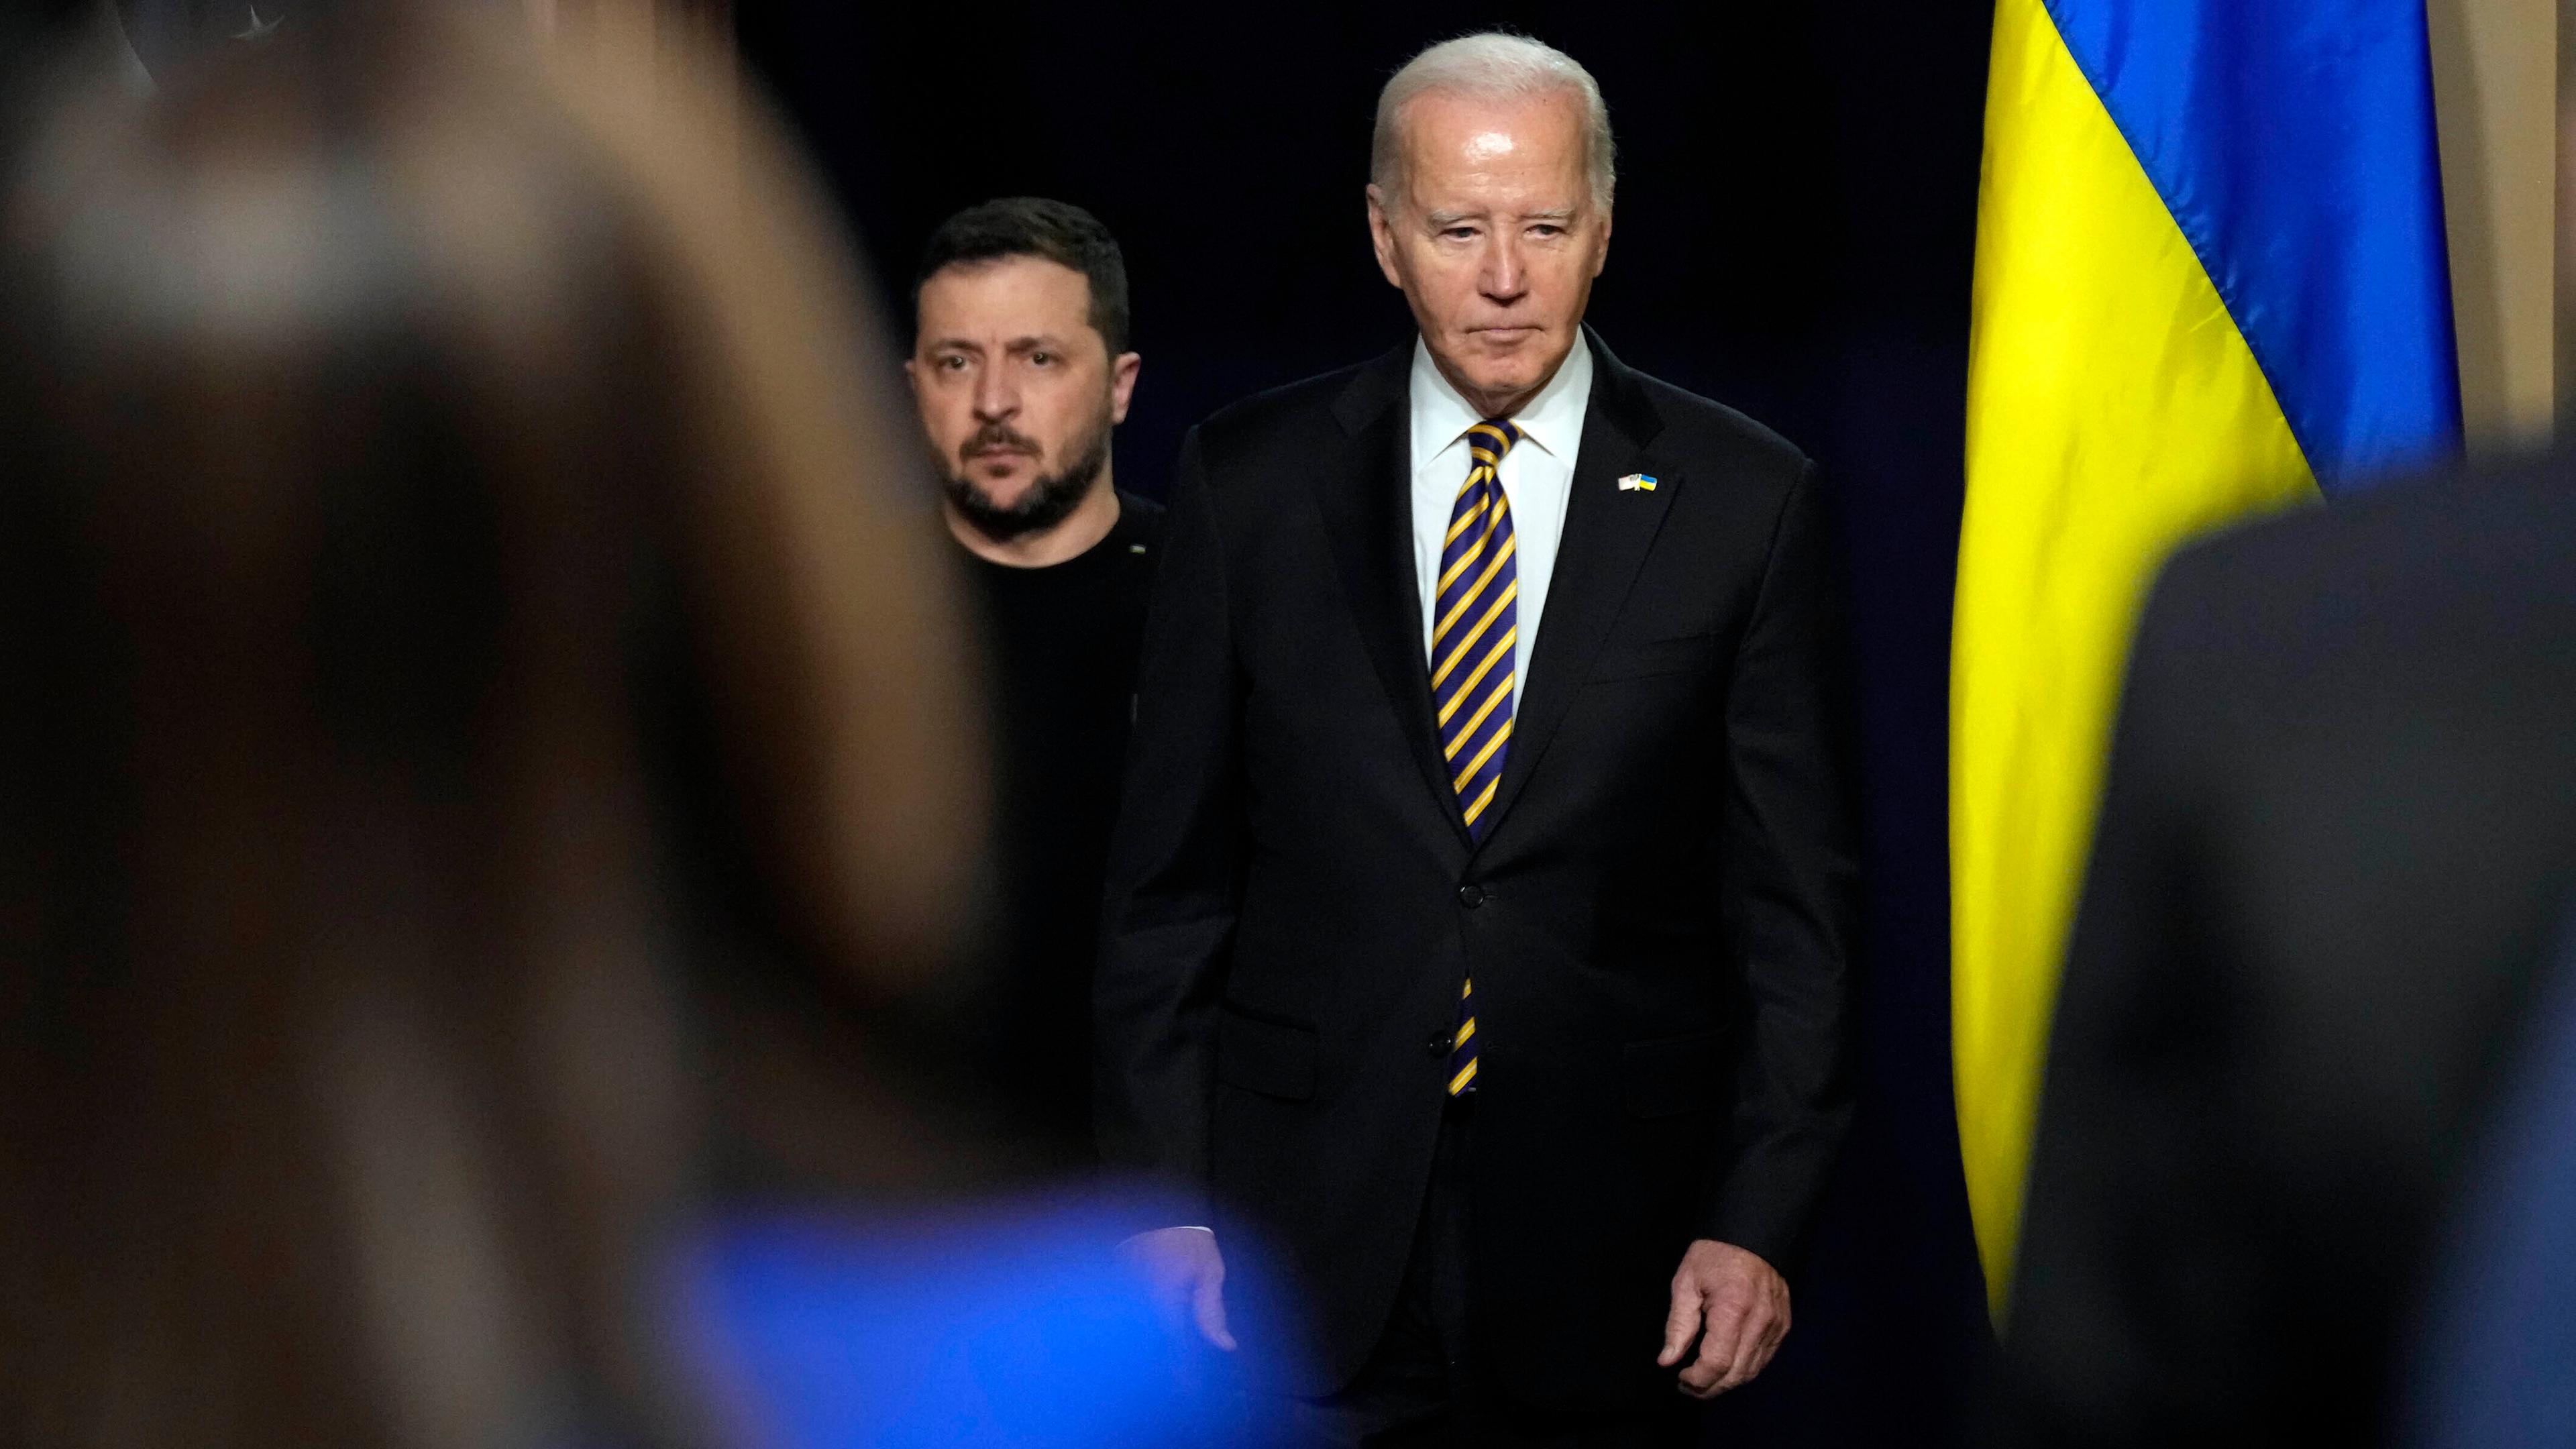 Joe Biden (r), Präsident der USA, Wolodymyr Selenskyj, Präsident der Ukraine während eines Treffens in Washington, D.C.